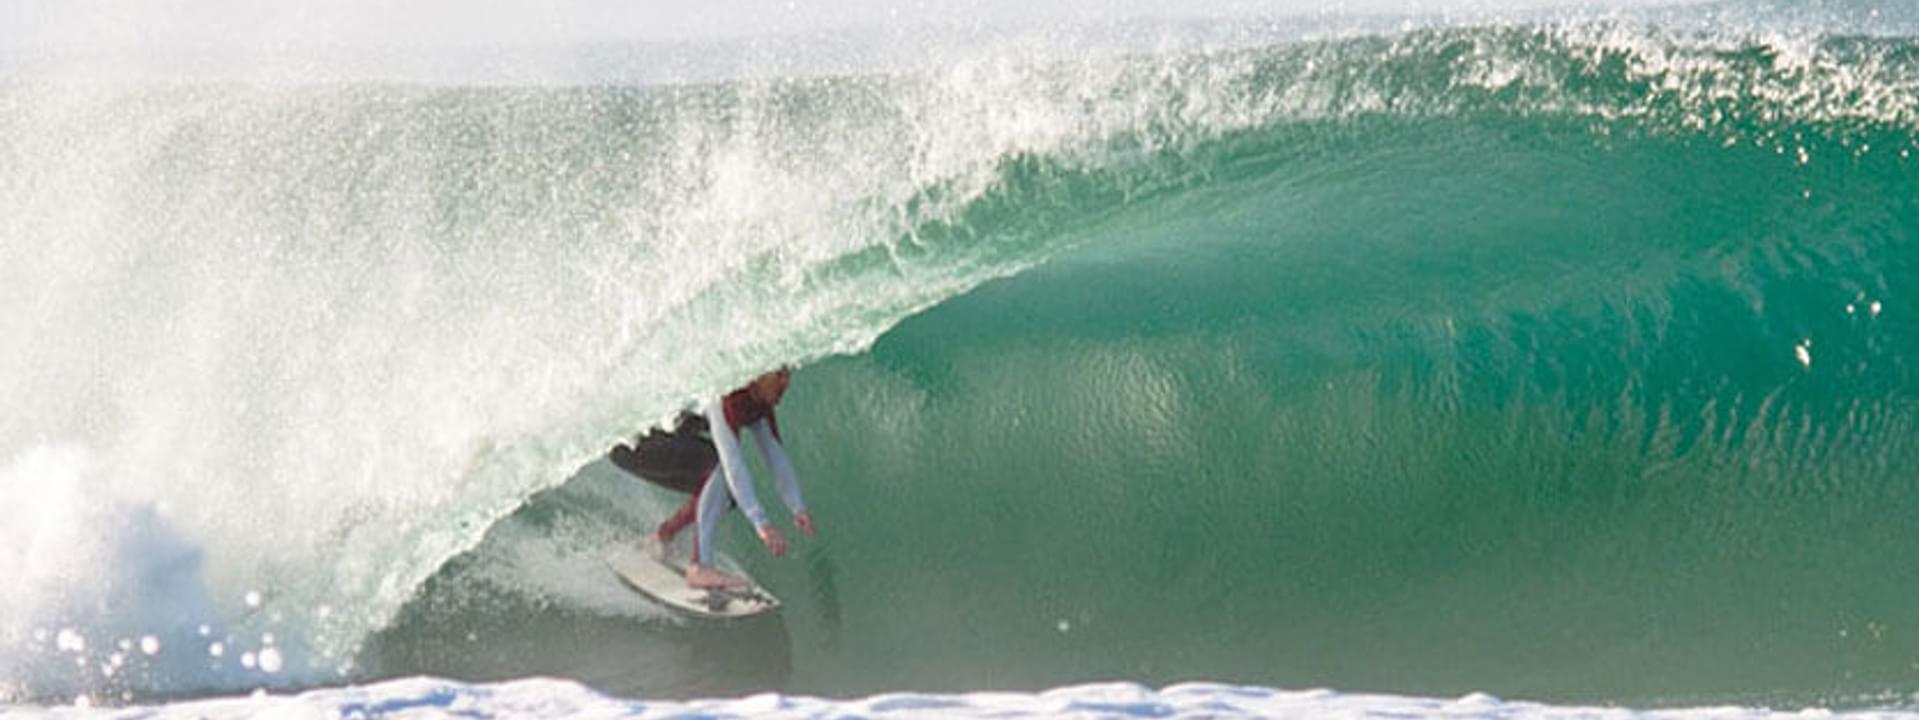 Peniche: ein Paradies für Surfer!